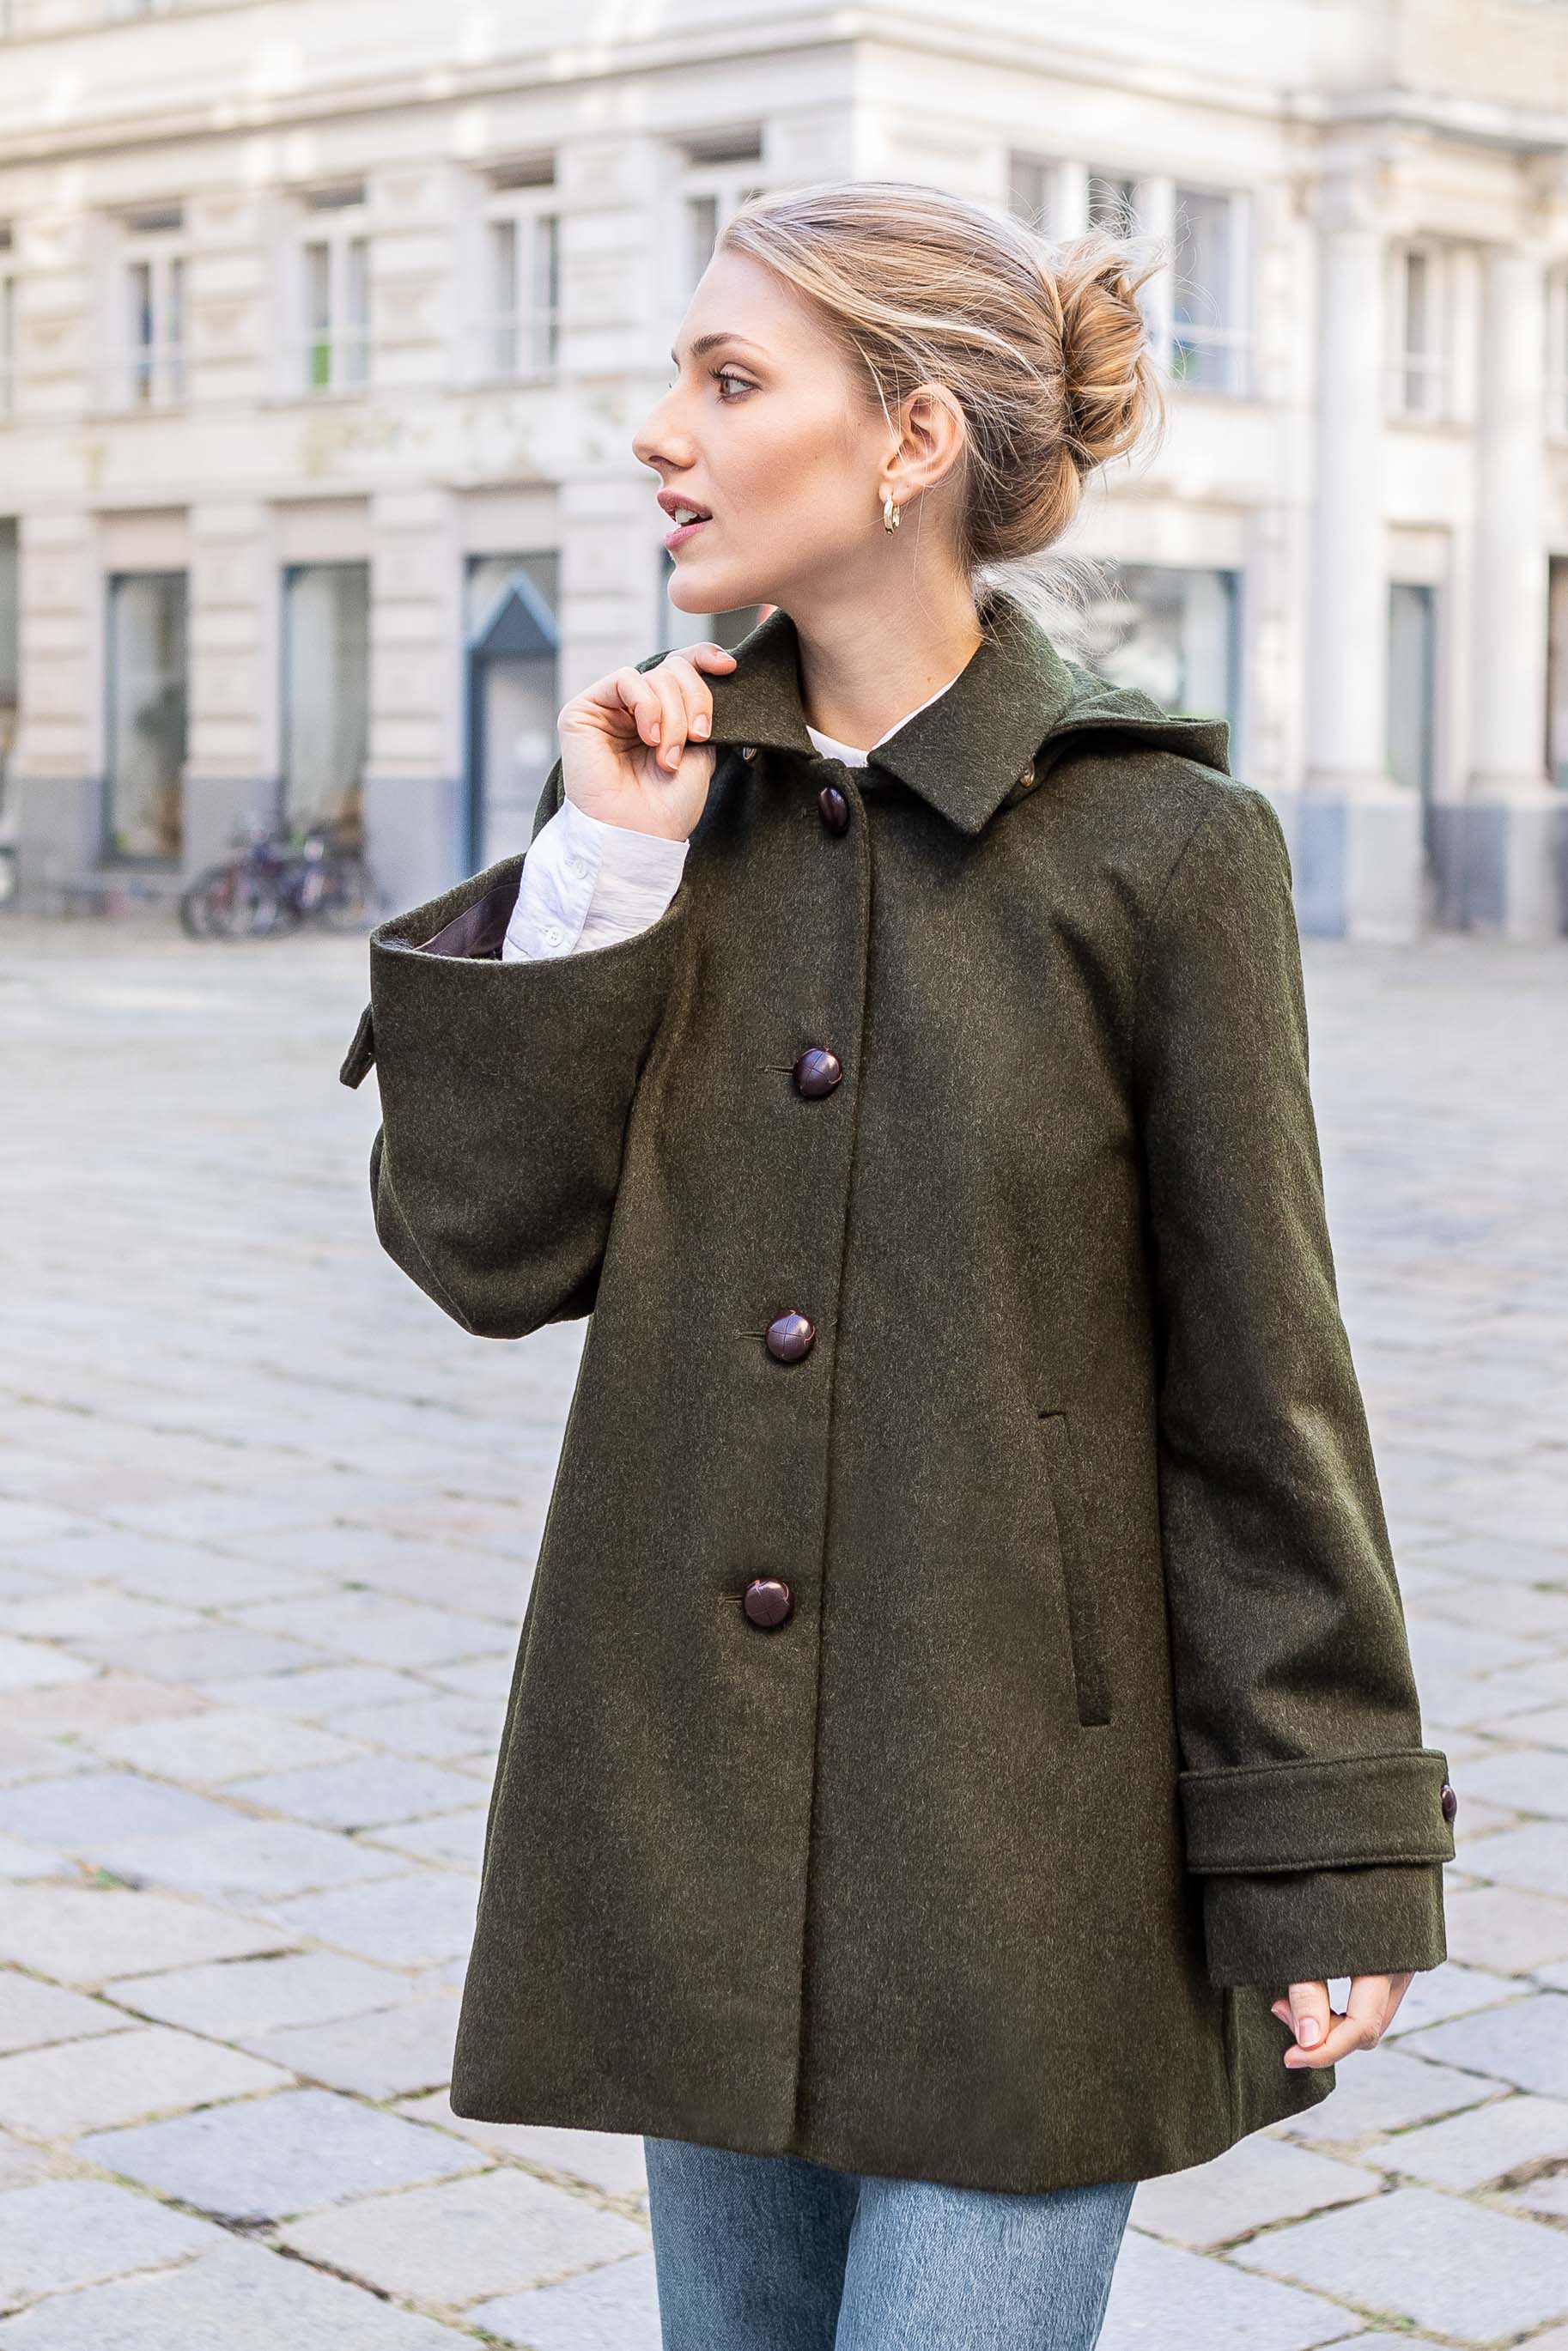 Buy Green Coat for Women Online